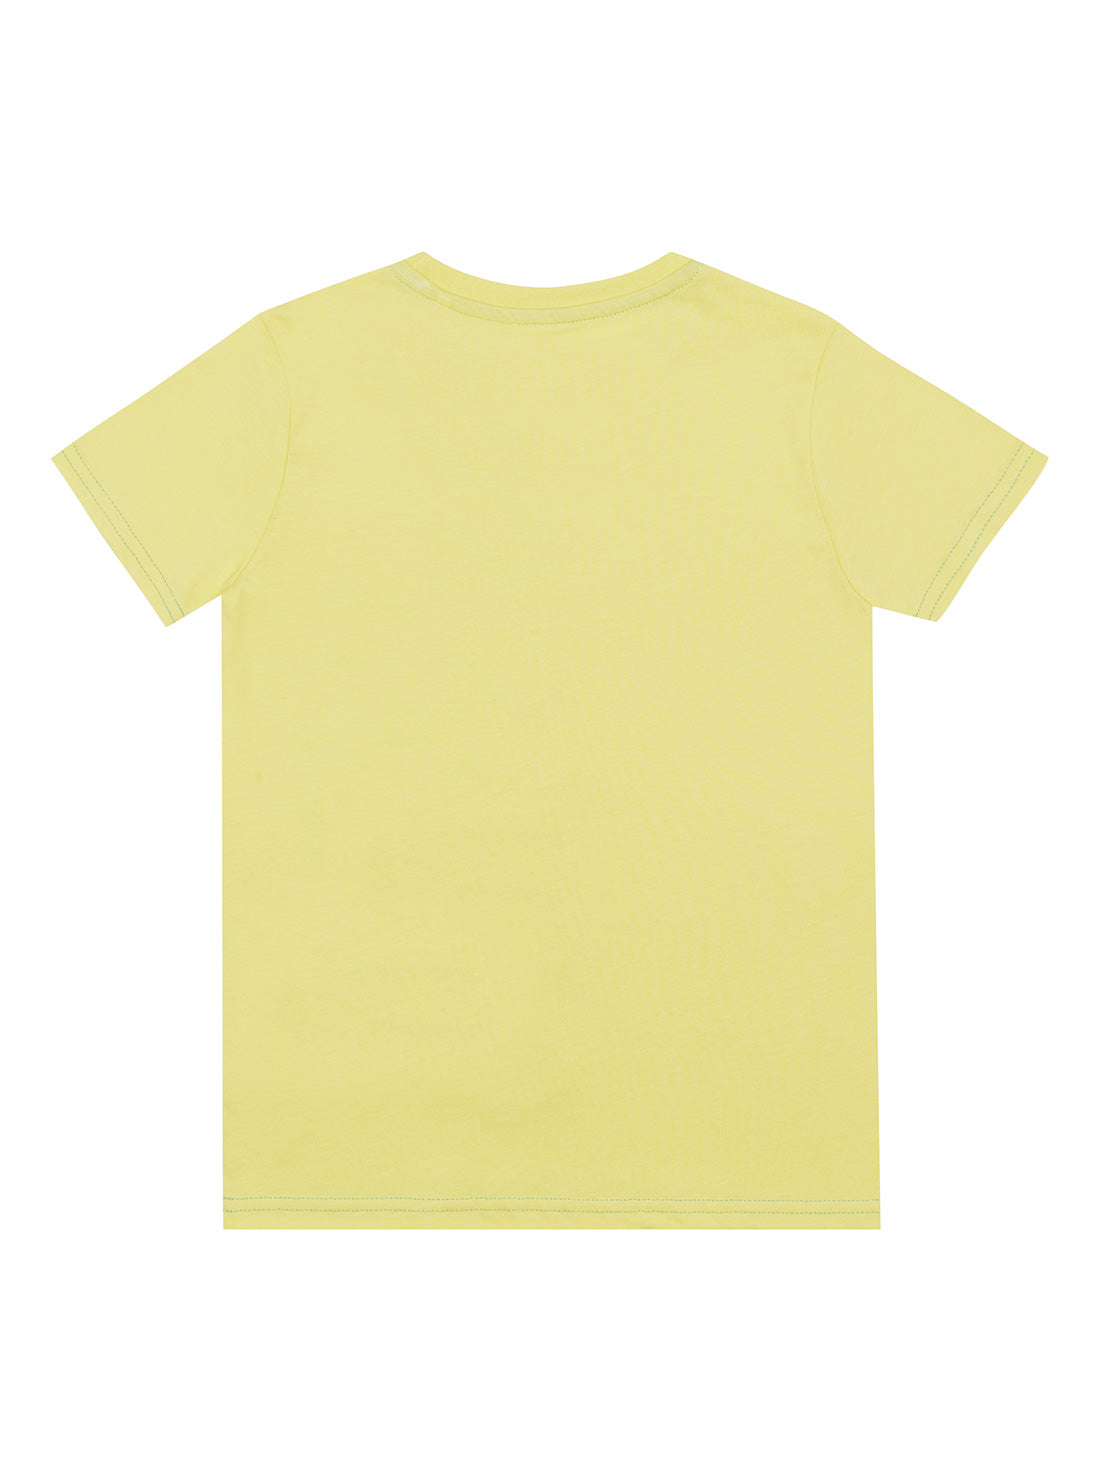 GUESS Little Boy Yellow Logo T-Shirt (2-7) N2GI15K8HM0 Back View